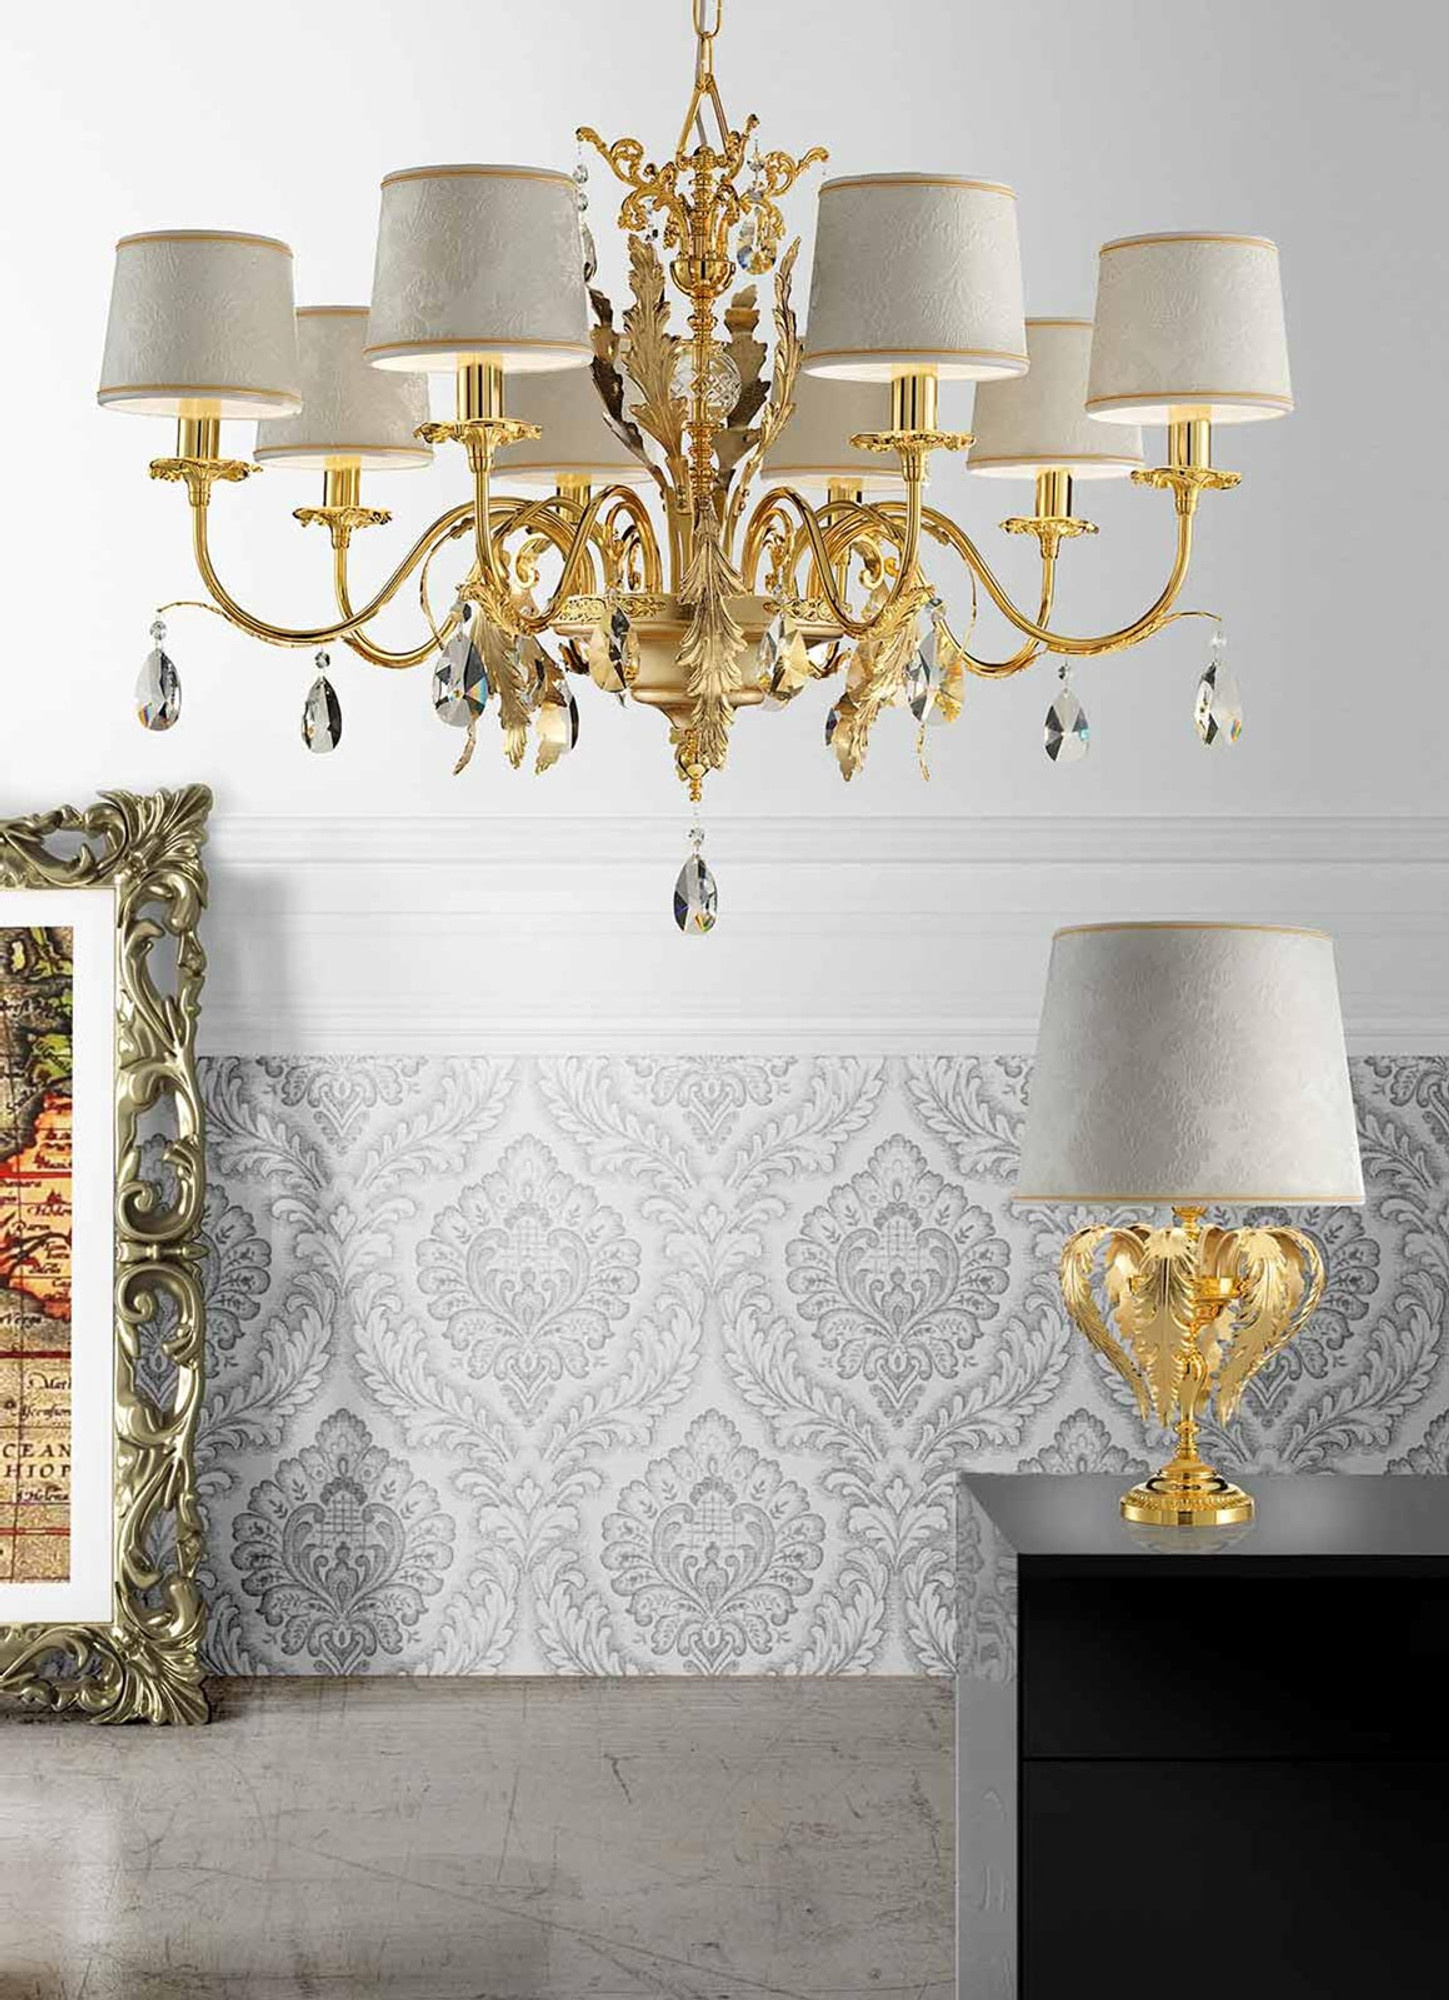 Masiero Acantia chandelier, Luxury lighting, Opulent design, Exquisite craftsmanship, 1450x2000 HD Handy